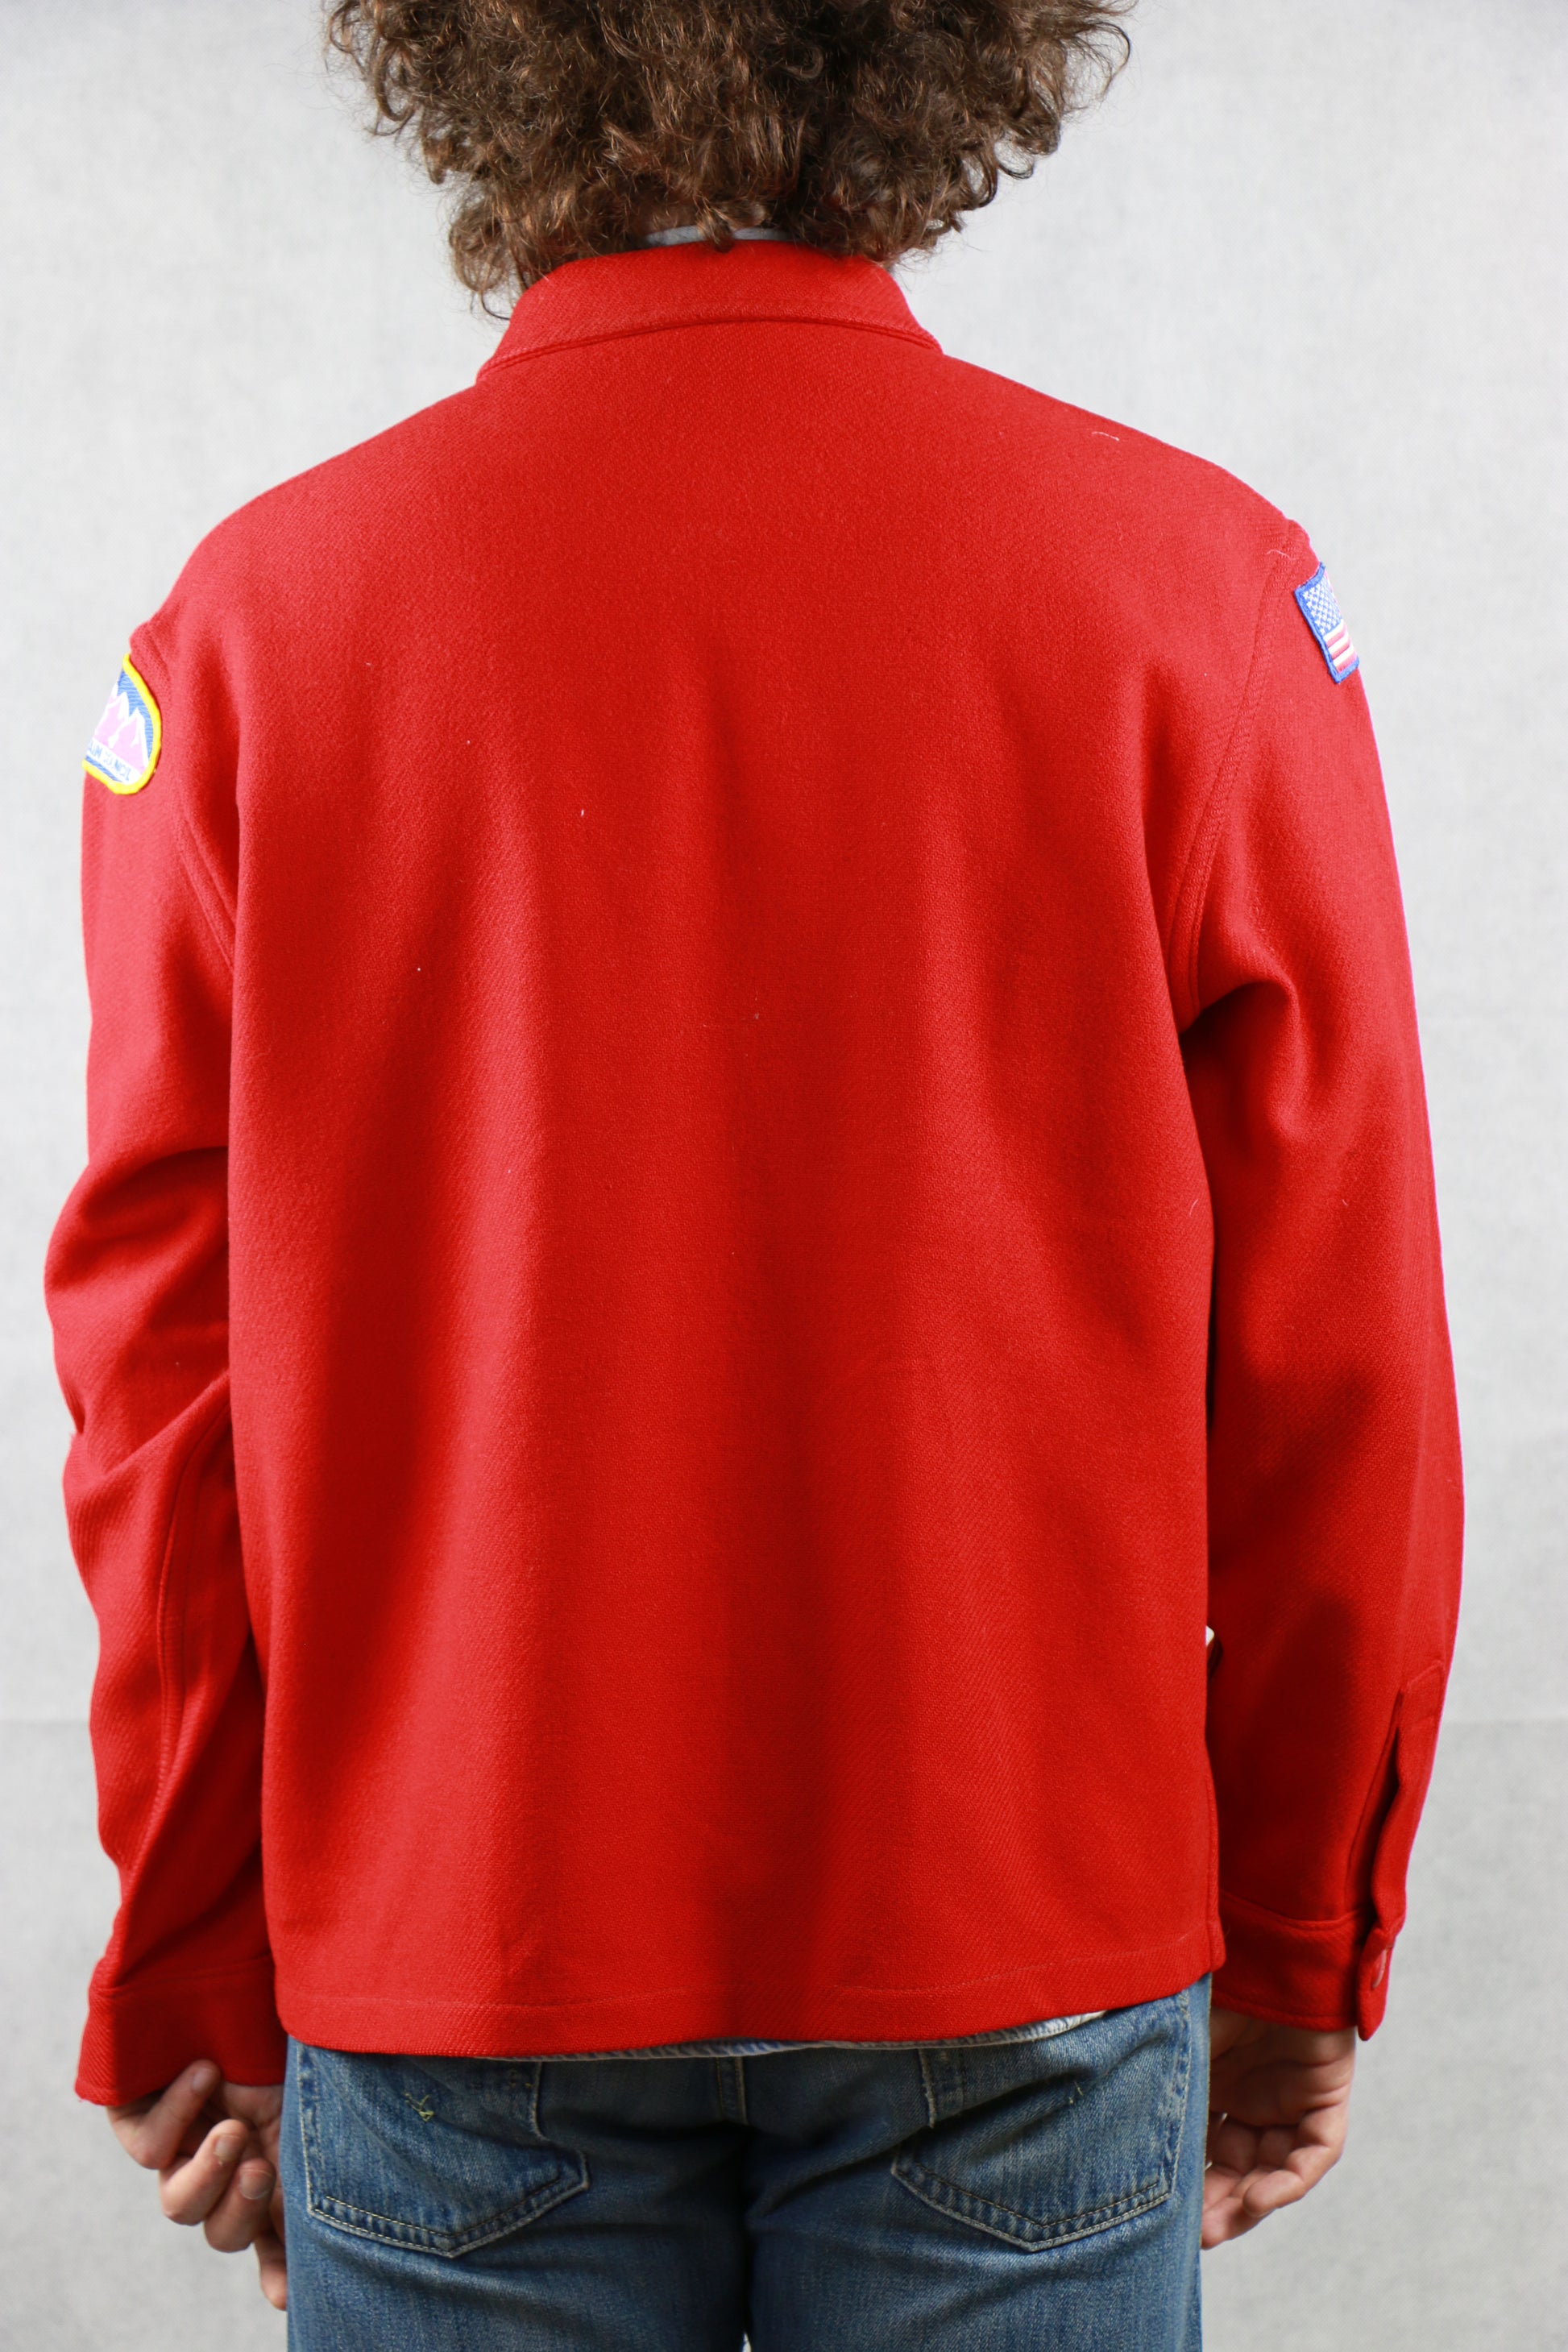 Boy Scout Red Shirt, clochard92.com